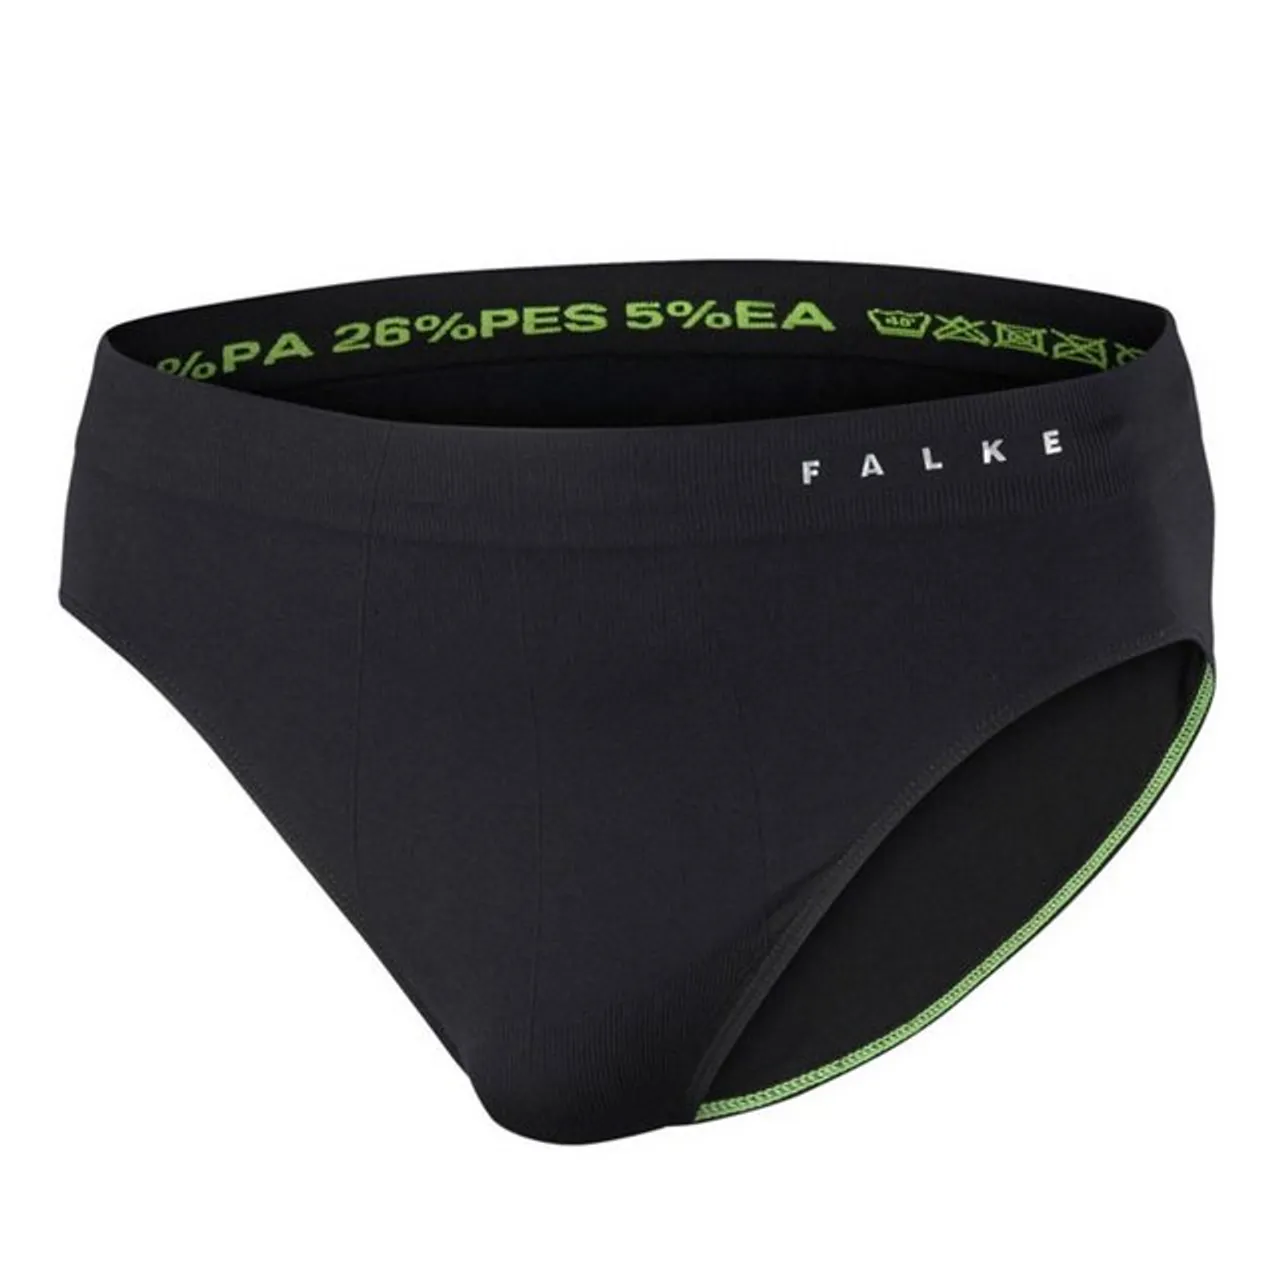 FALKE Funktionshose FALKE Underwear Briefs Men - Funktionsunterhose Herren